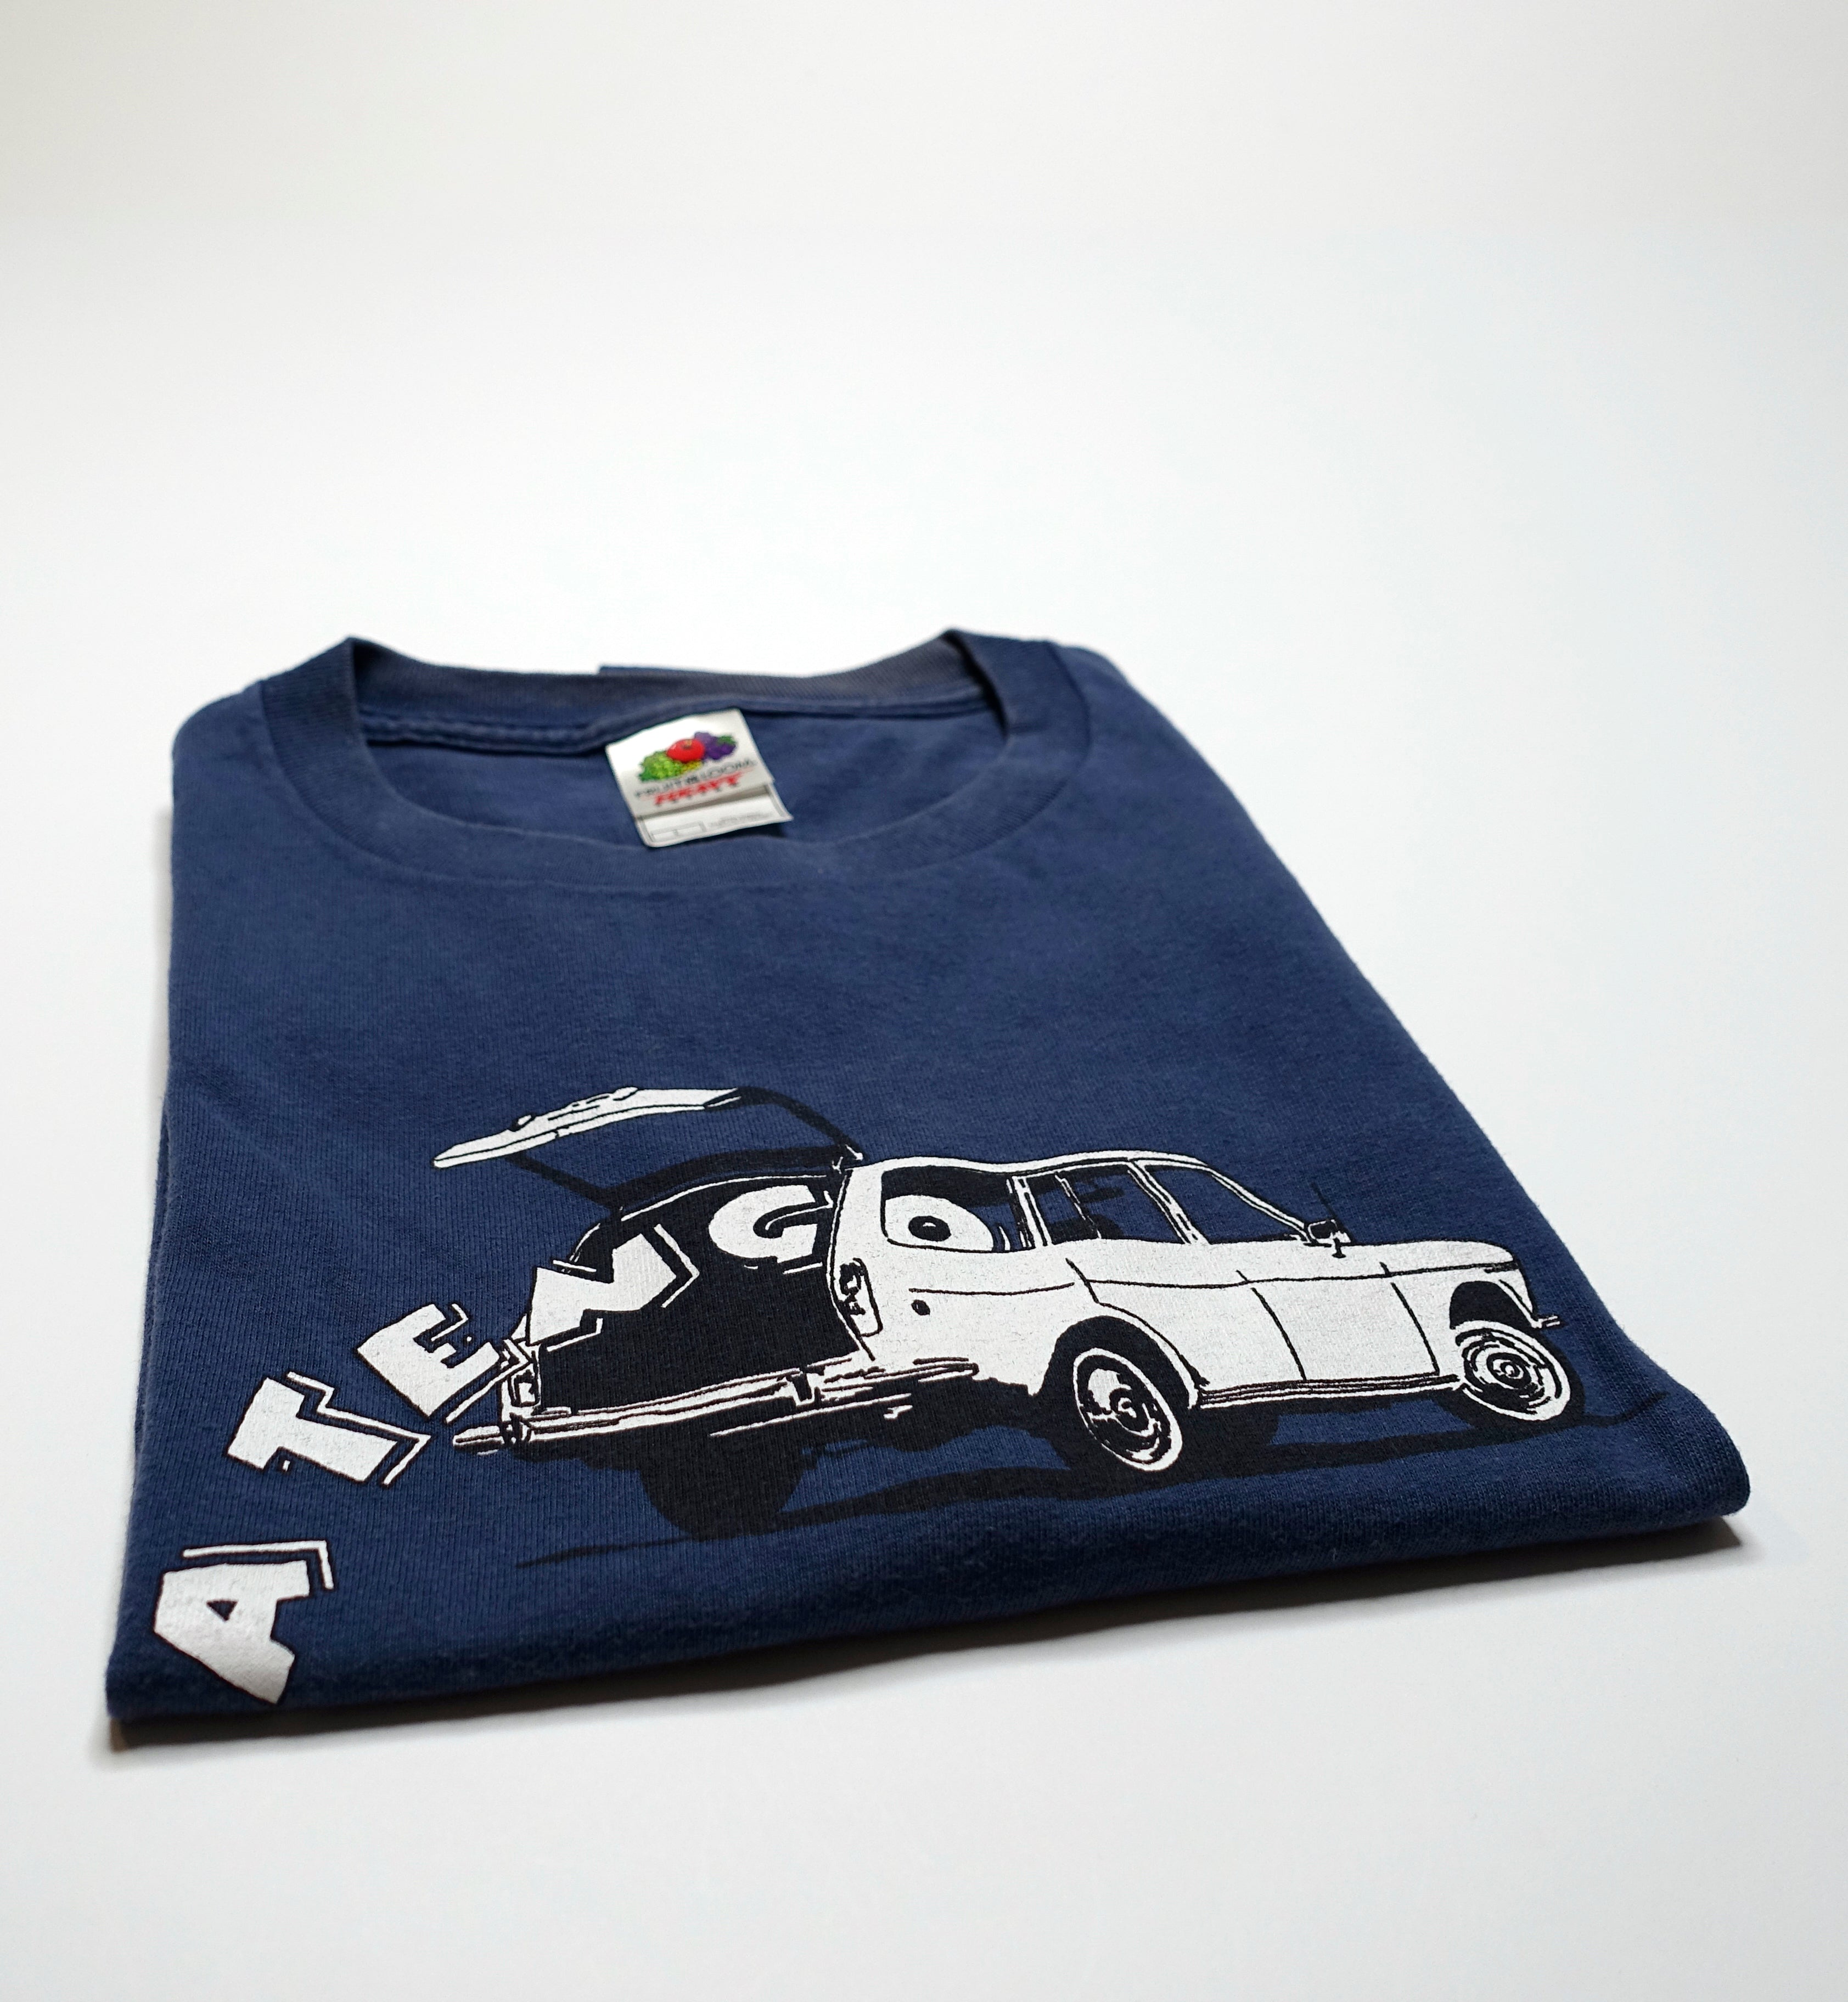 Yo La Tengo ‎– Station Wagon Hatchback 90's Tour Shirt Size Large